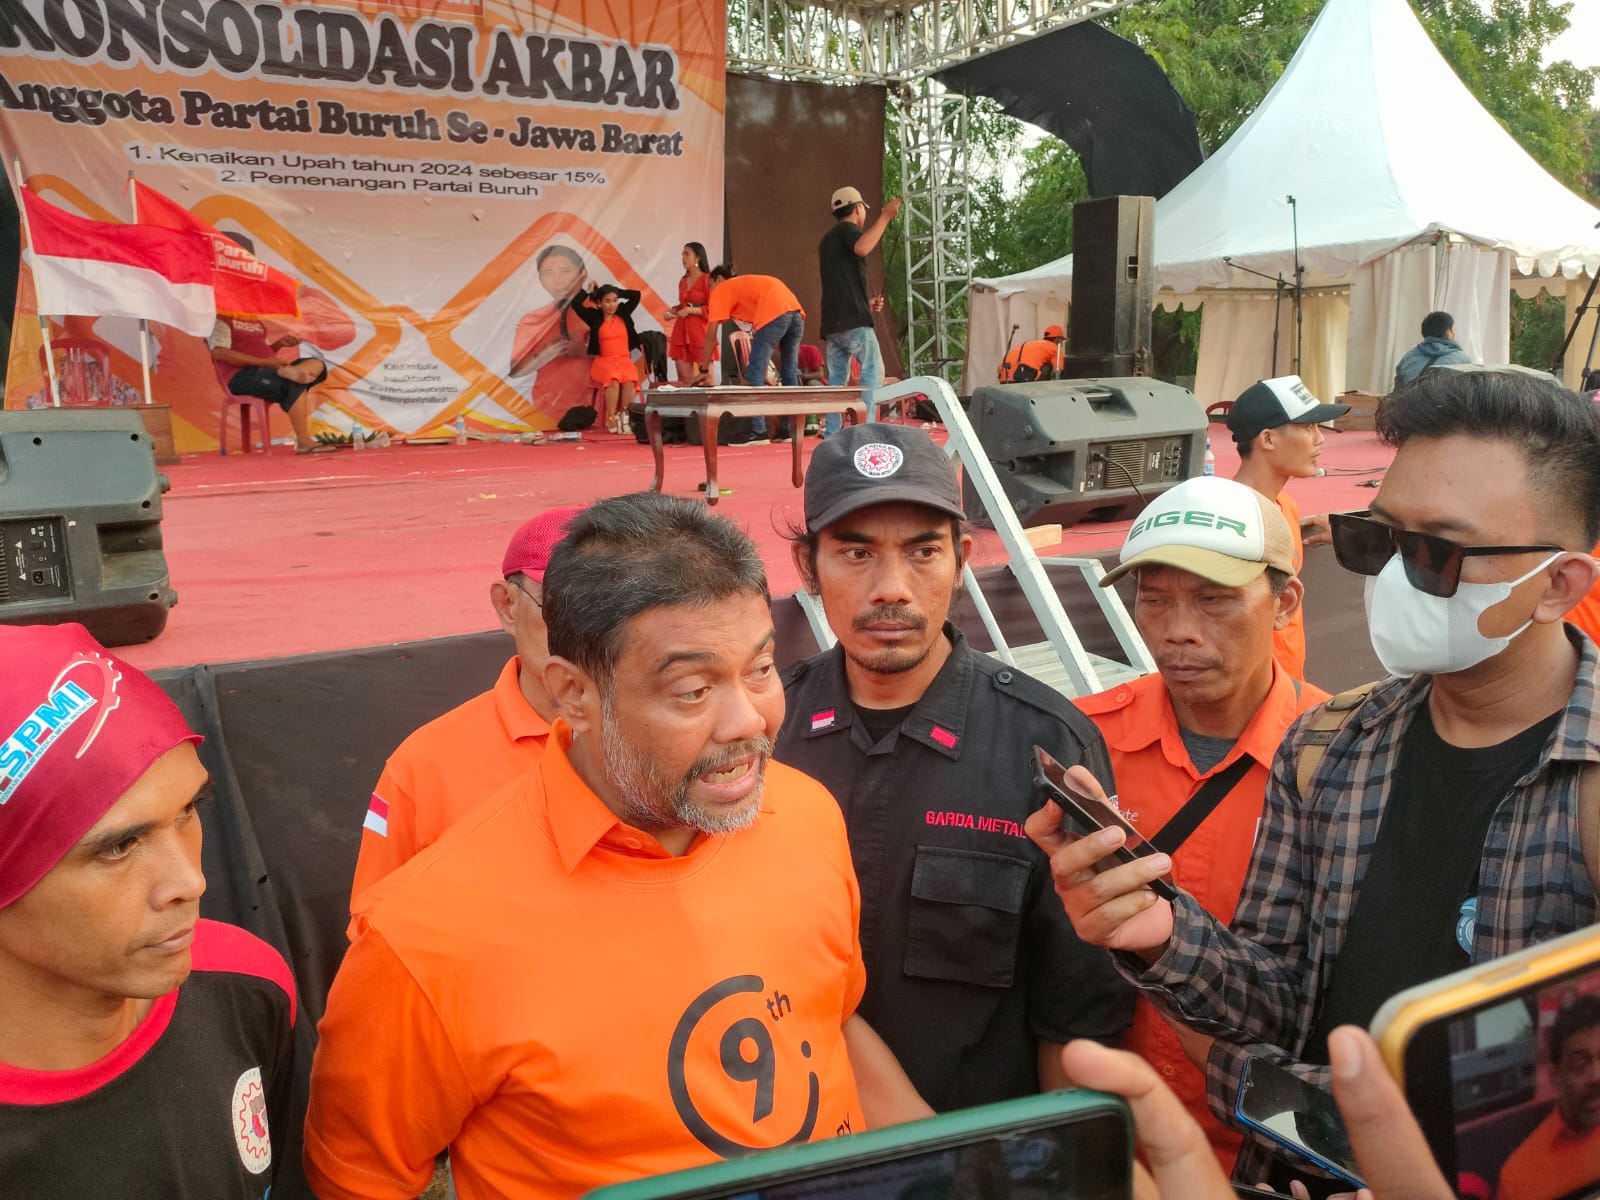 Jawa Barat Jadi Lumbung Suara Terbesar Partai Buruh